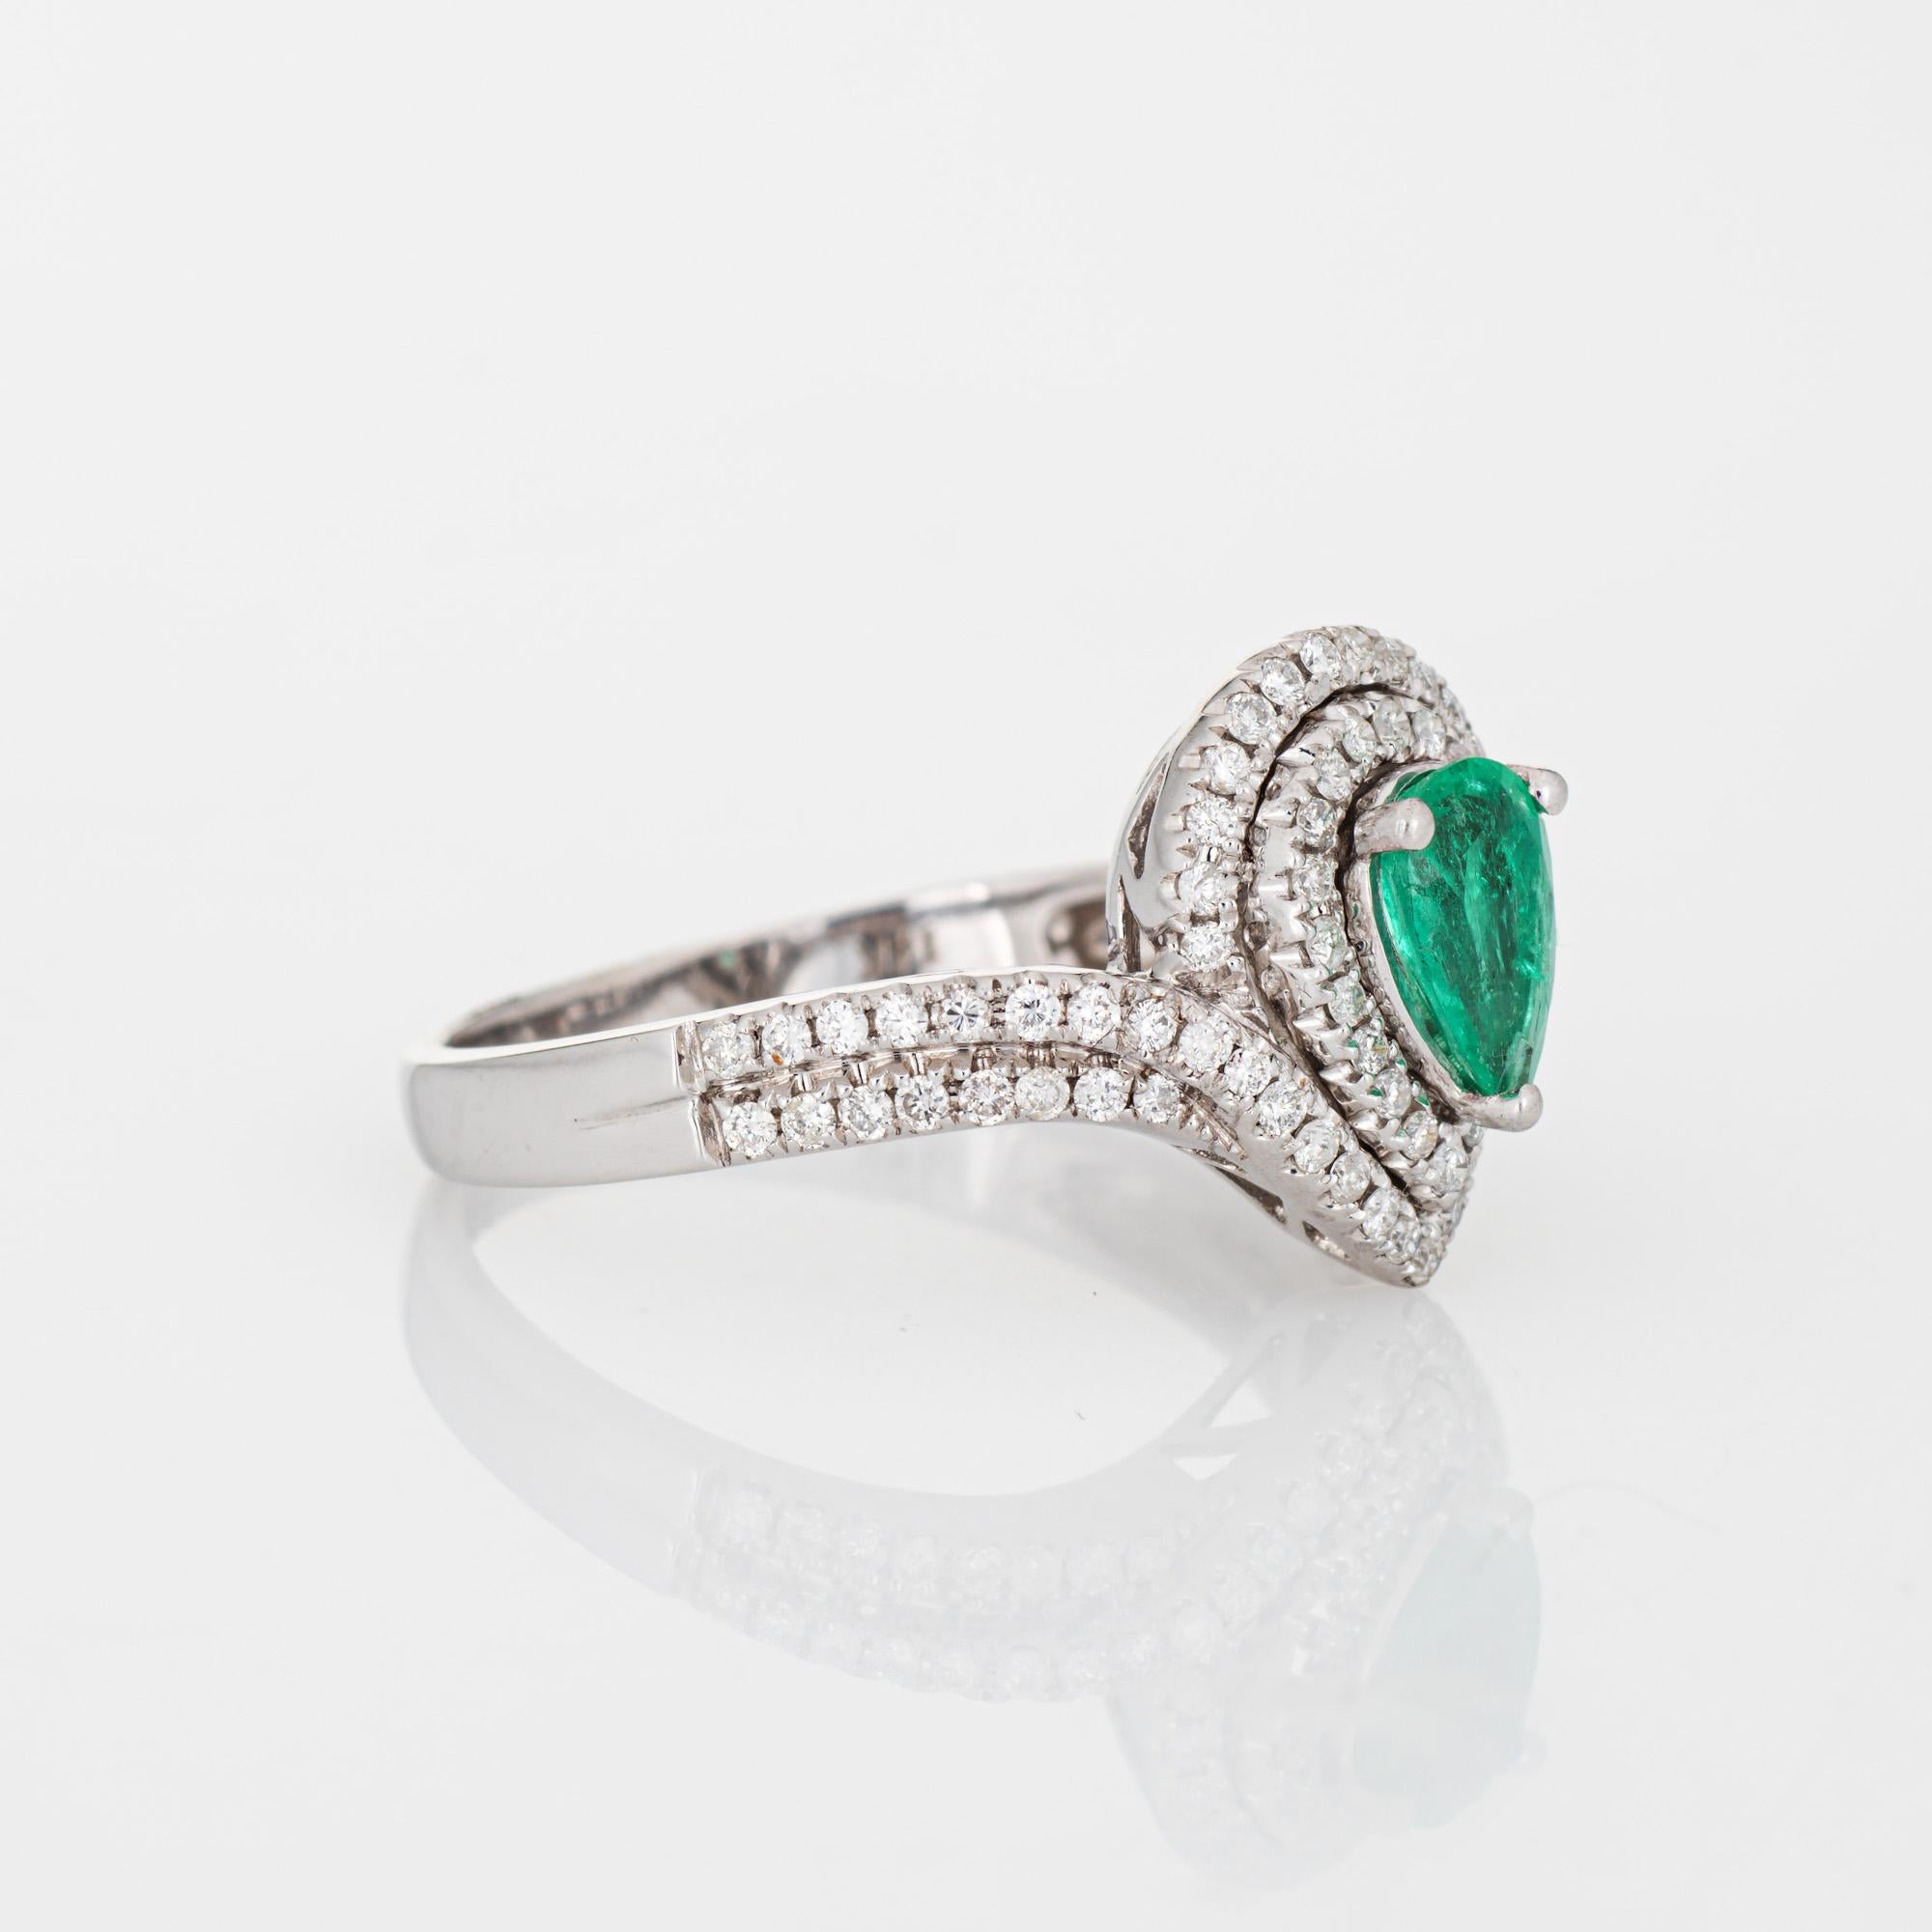 Contemporary Emerald Diamond Ring Estate 14k White Gold Pear Halo Fine Jewelry For Sale